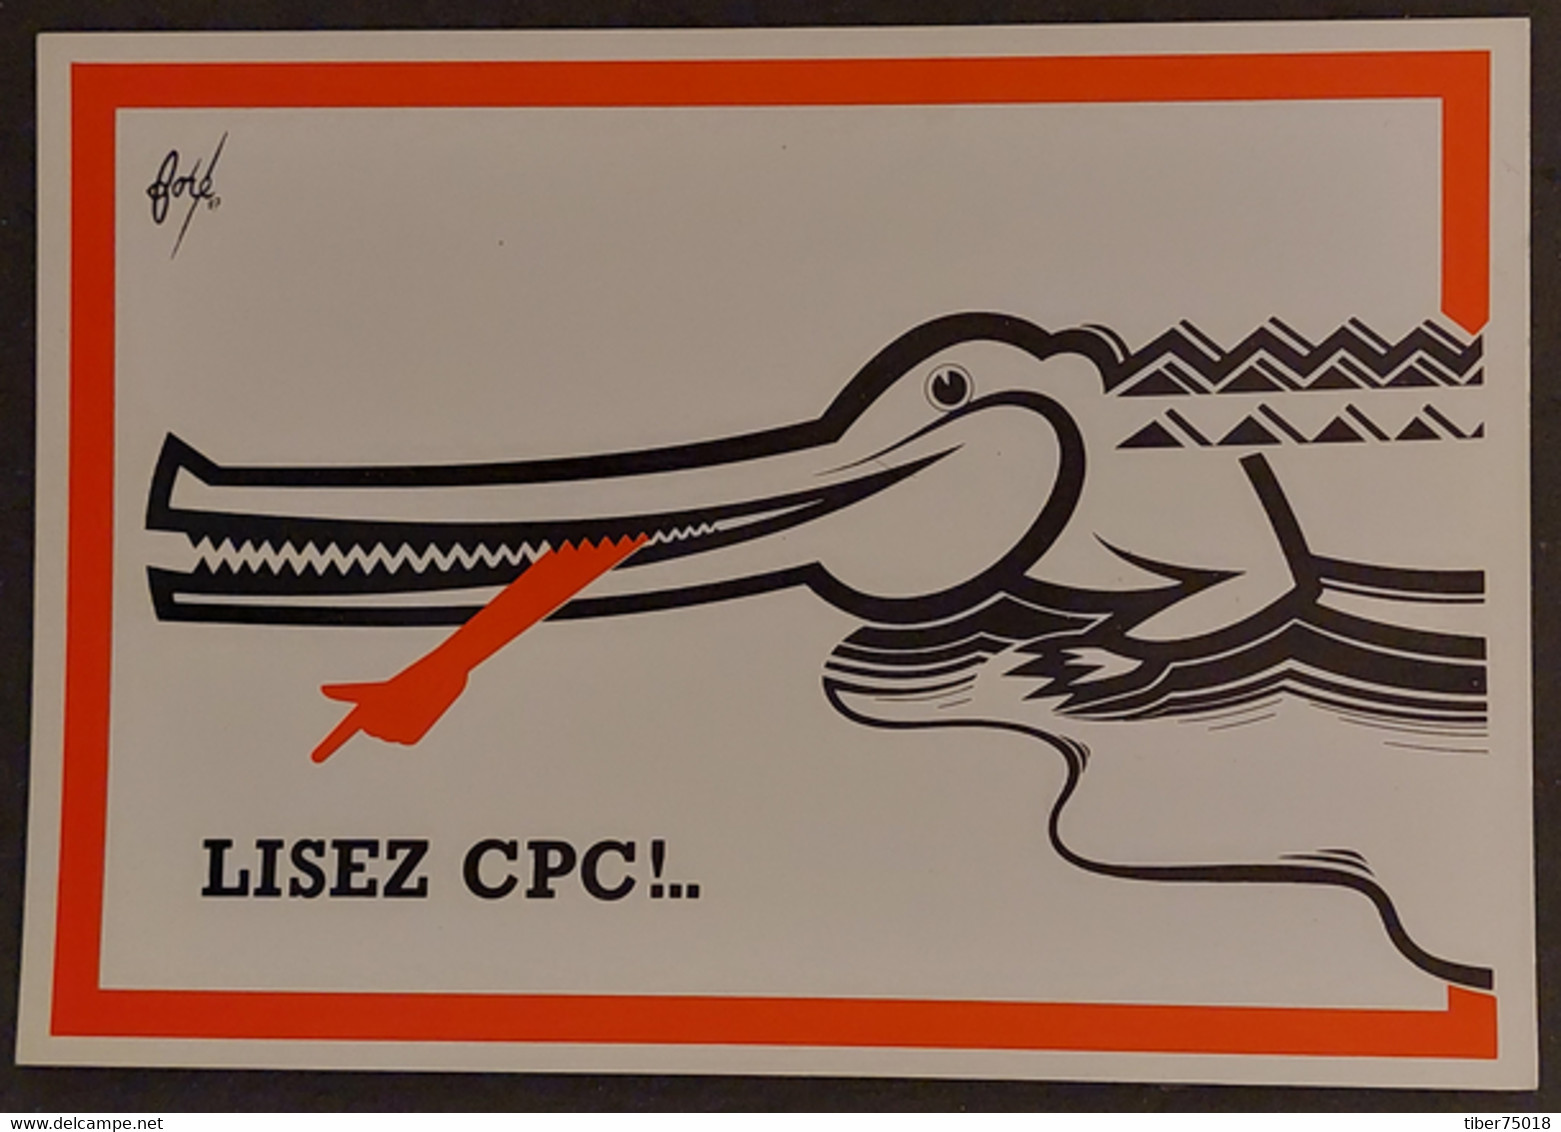 Carte Postale : Lisez CPC !... (crocodile) Illustration : Foré - Fore